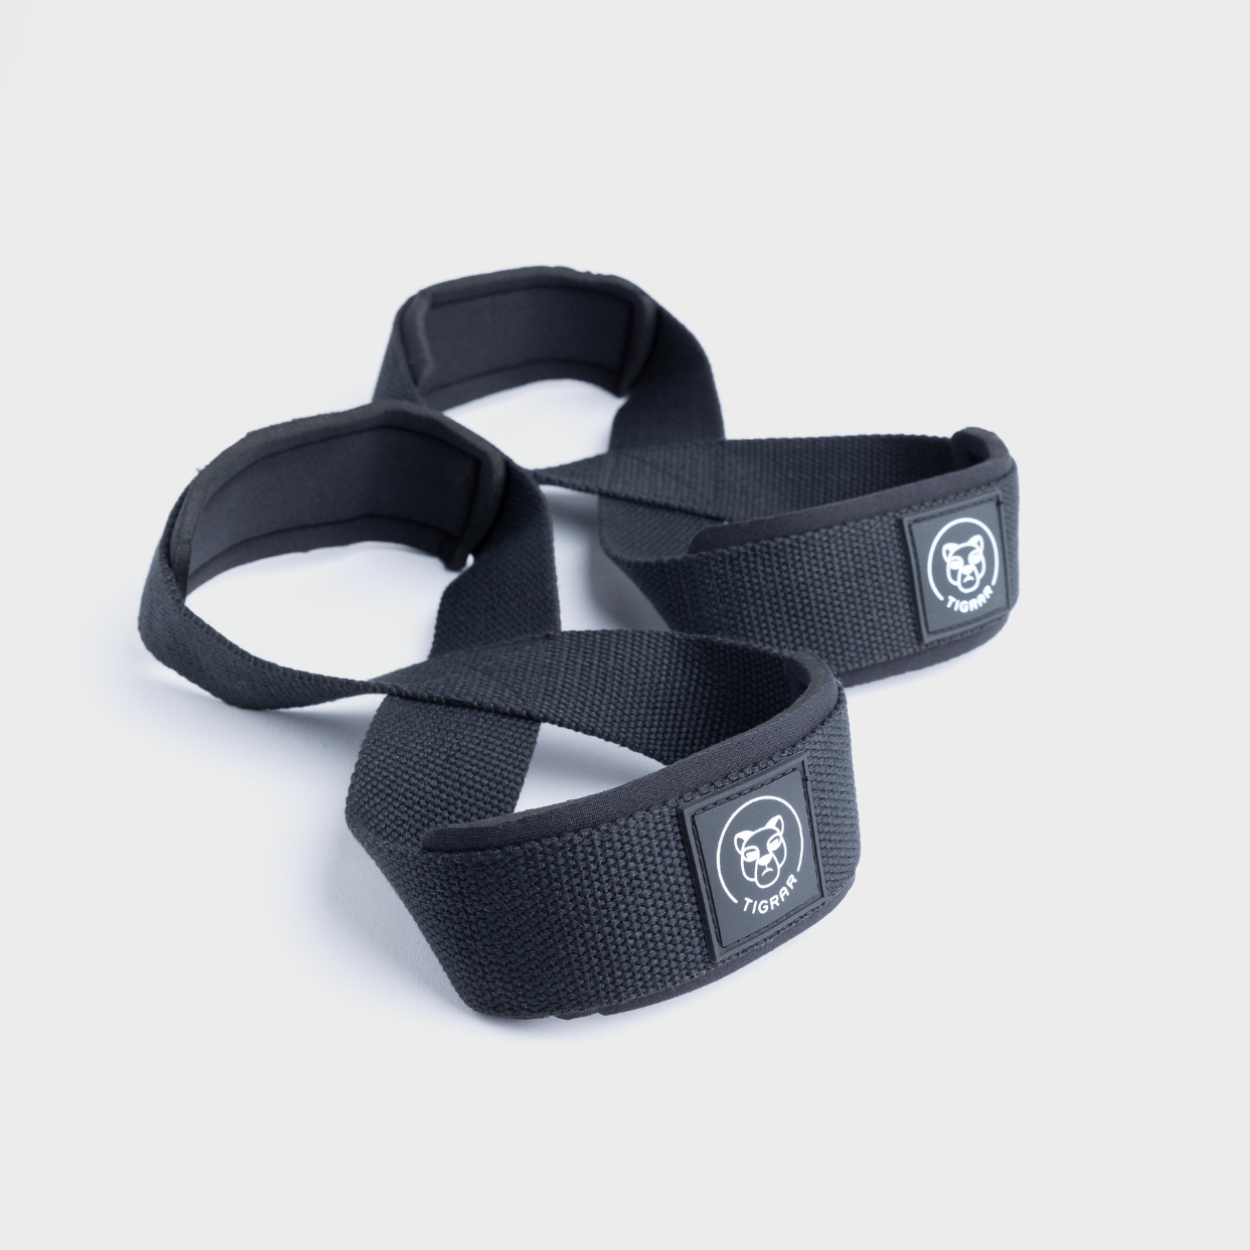 Tigrar Figure 8 straps van zwart nylon, perfect voor gewichtheffen, met grijze achtergrond.